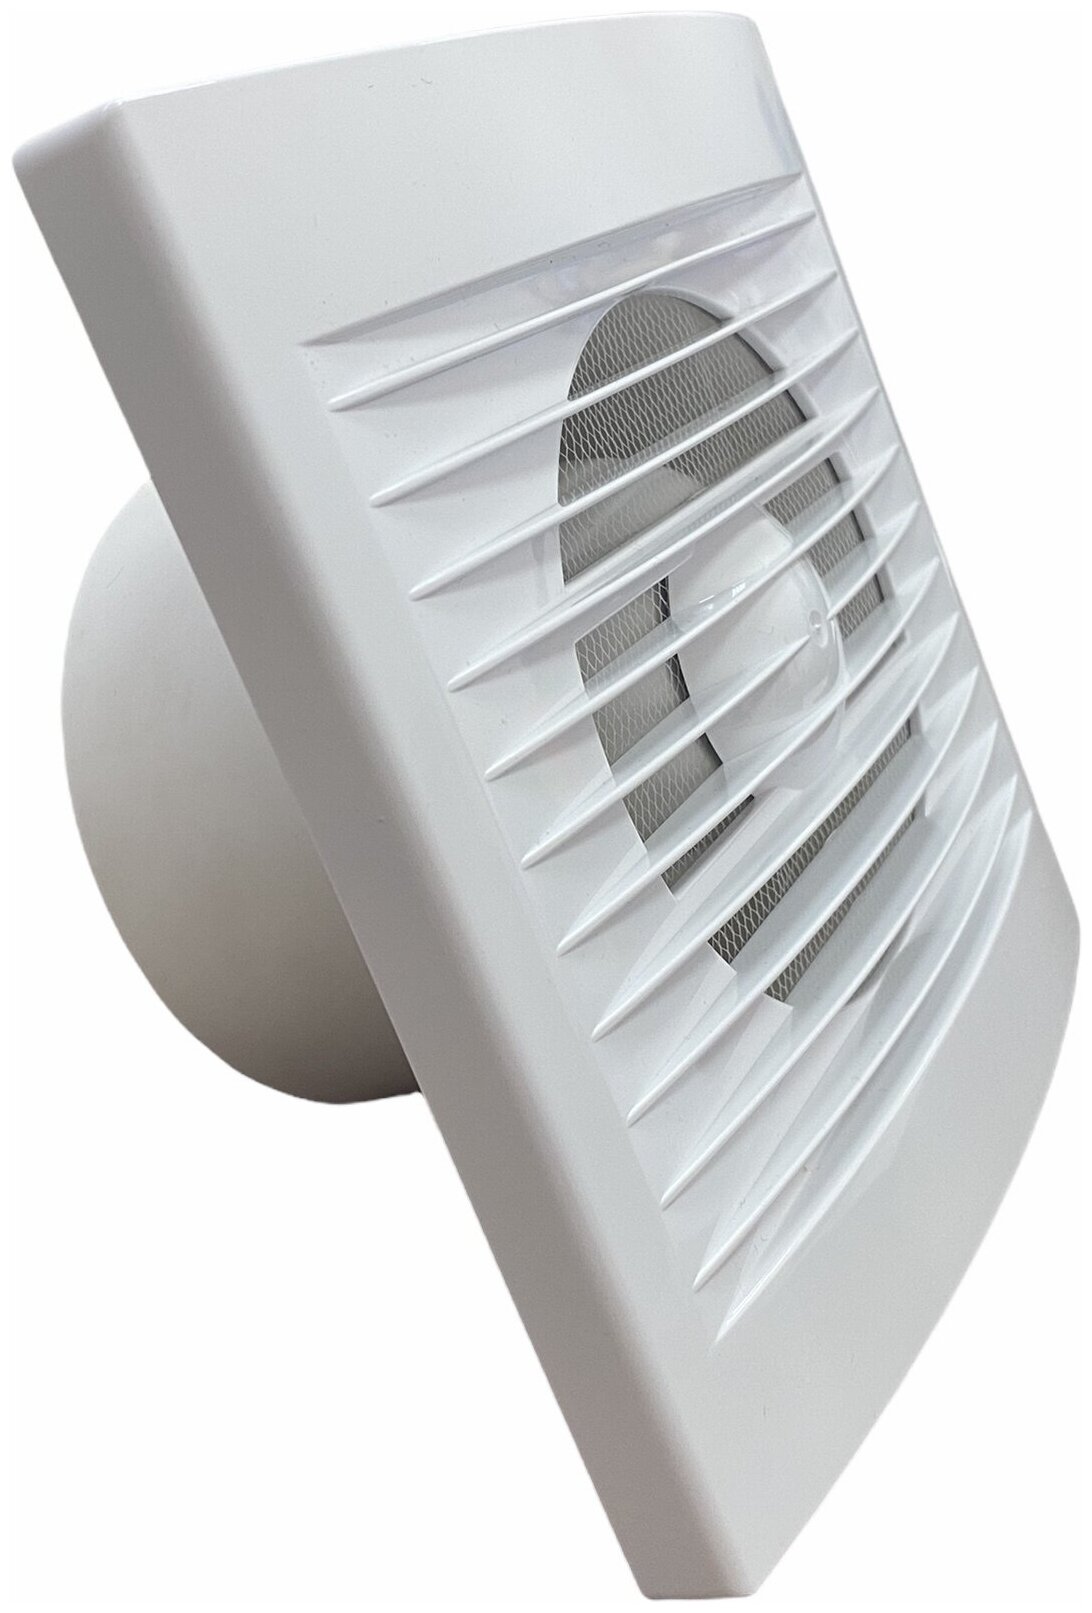 Вентилятор вытяжной осевой 120 С для вытяжки из ванных комнат и санузлов, в комплекте с москитной сеткой - фотография № 2